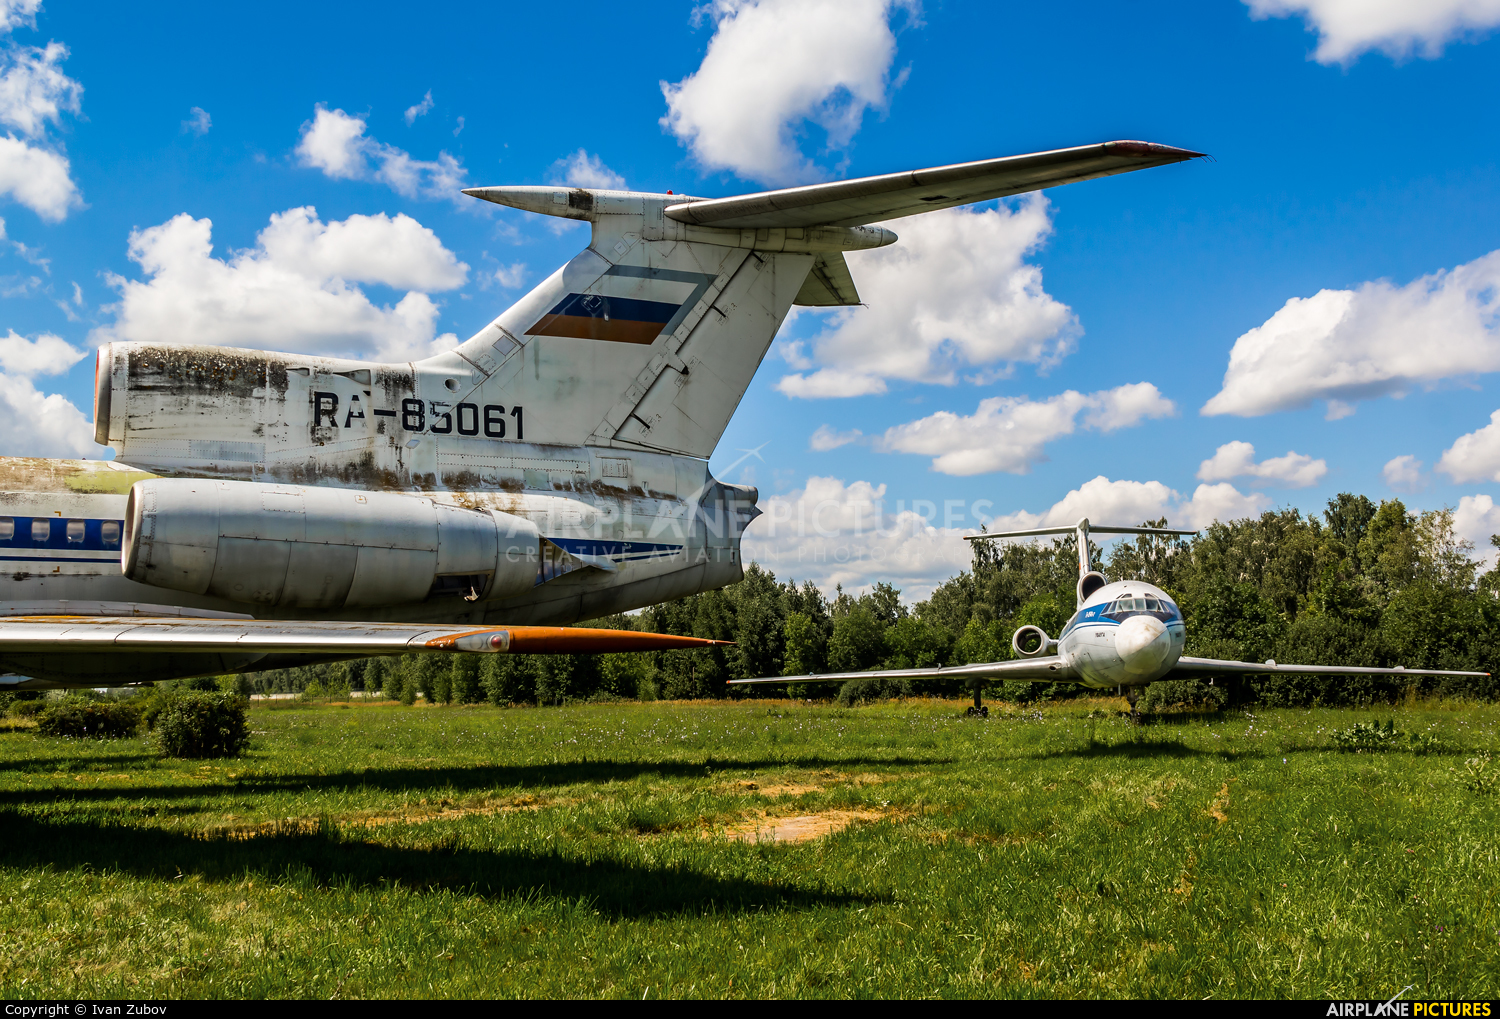 Ulyanovsk Higher Civil Aviation School RA-85061 aircraft at Ulyanovsk - Baratayevka